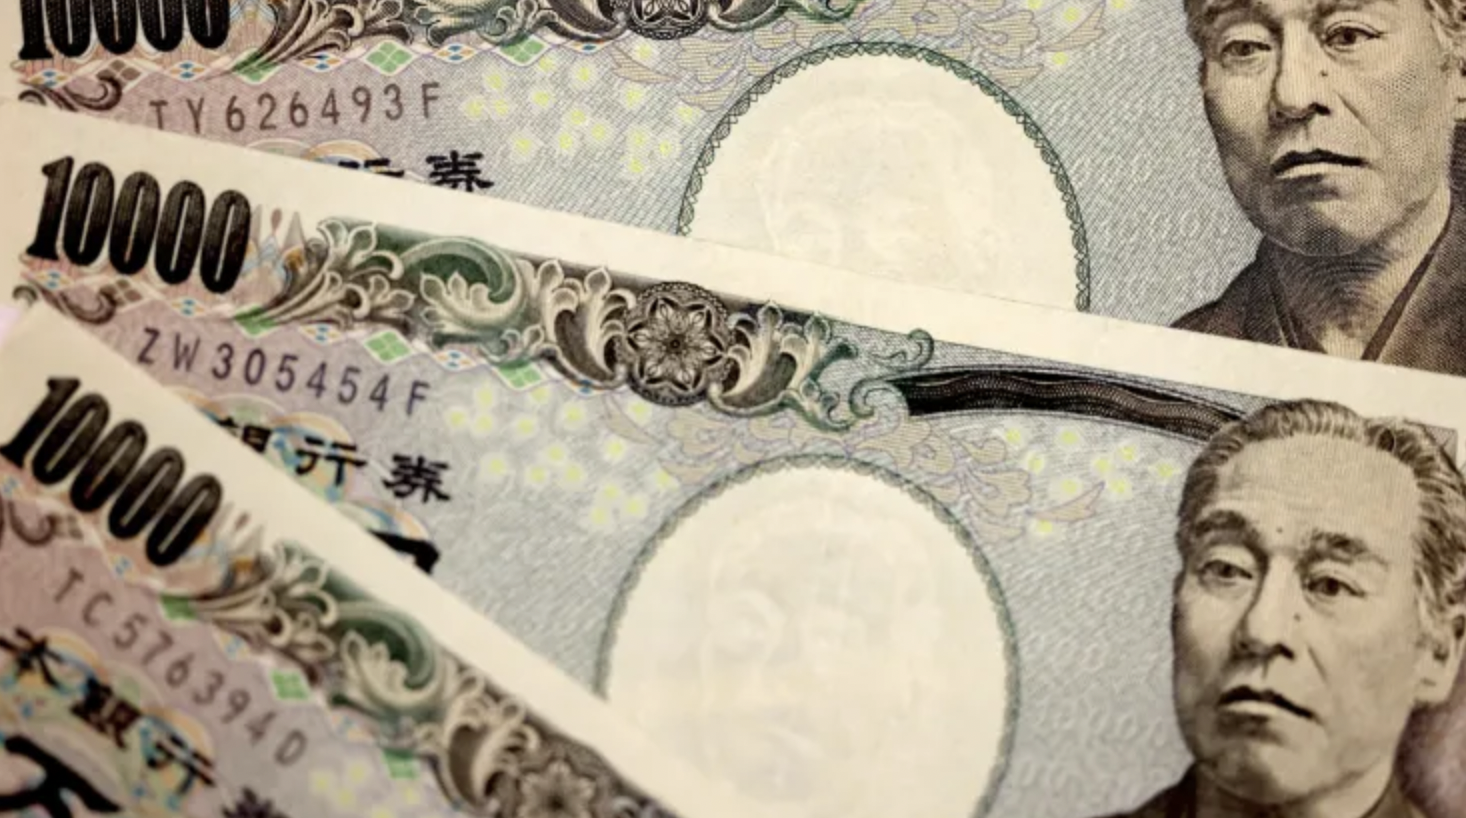 Yên Nhật: Hãy xem hình ảnh đồng tiền của Nhật Bản và tìm hiểu về lý do tại sao Yên Nhật là một trong những đồng tiền được ưa chuộng nhất trong cộng đồng tài chính quốc tế. Hiểu rõ hơn về giá trị của nó và cách sử dụng nó trong các giao dịch thương mại quốc tế.